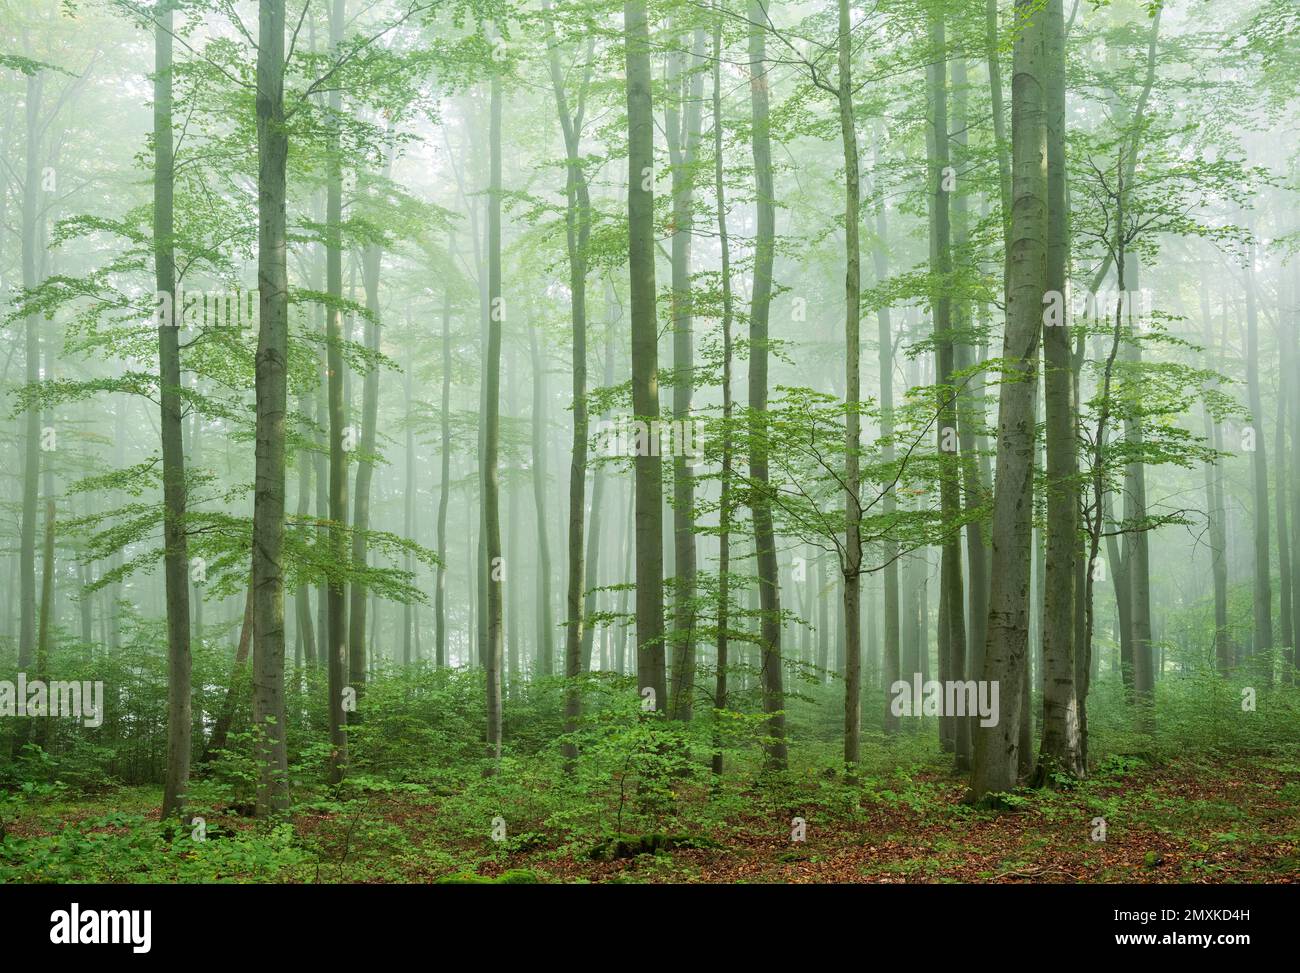 Forêt de hêtres anciens et proche de la nature avec brume matinale, chaîne de montagnes Hohe Schrecke, Thuringe, Allemagne, Europe Banque D'Images